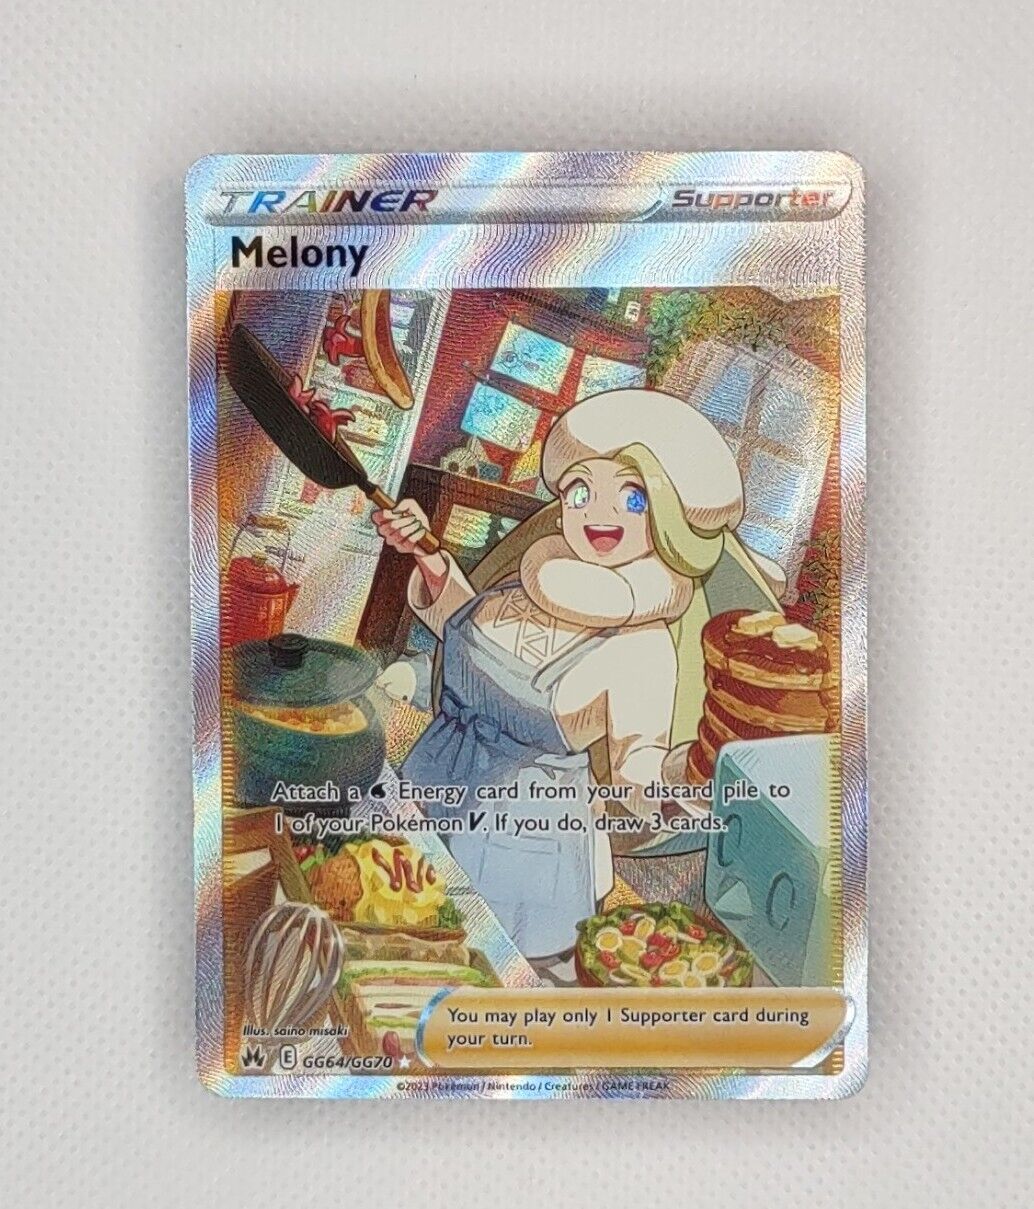 Melony GG64/GG70 Holo Ultra Rare - Pokemon Crown Zenith: Galarian Gallery